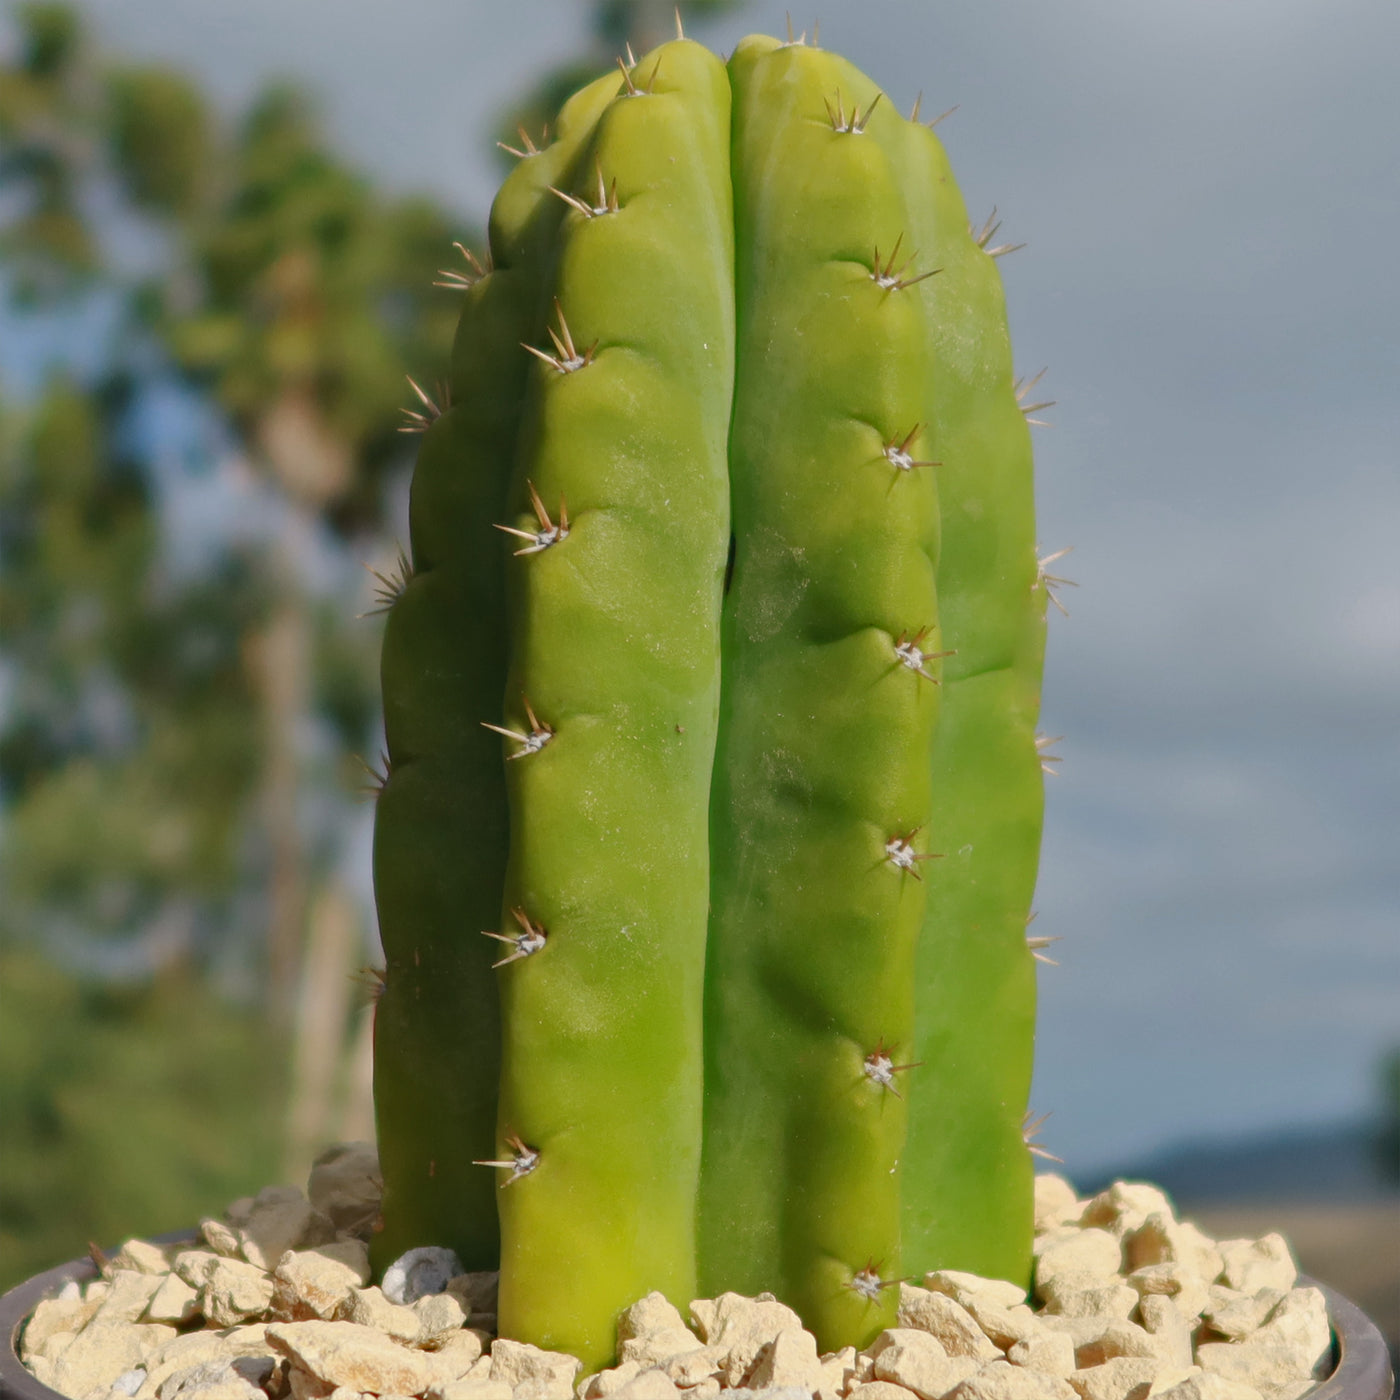 San Pedro Cactus 'Echinopsis pachanoi'